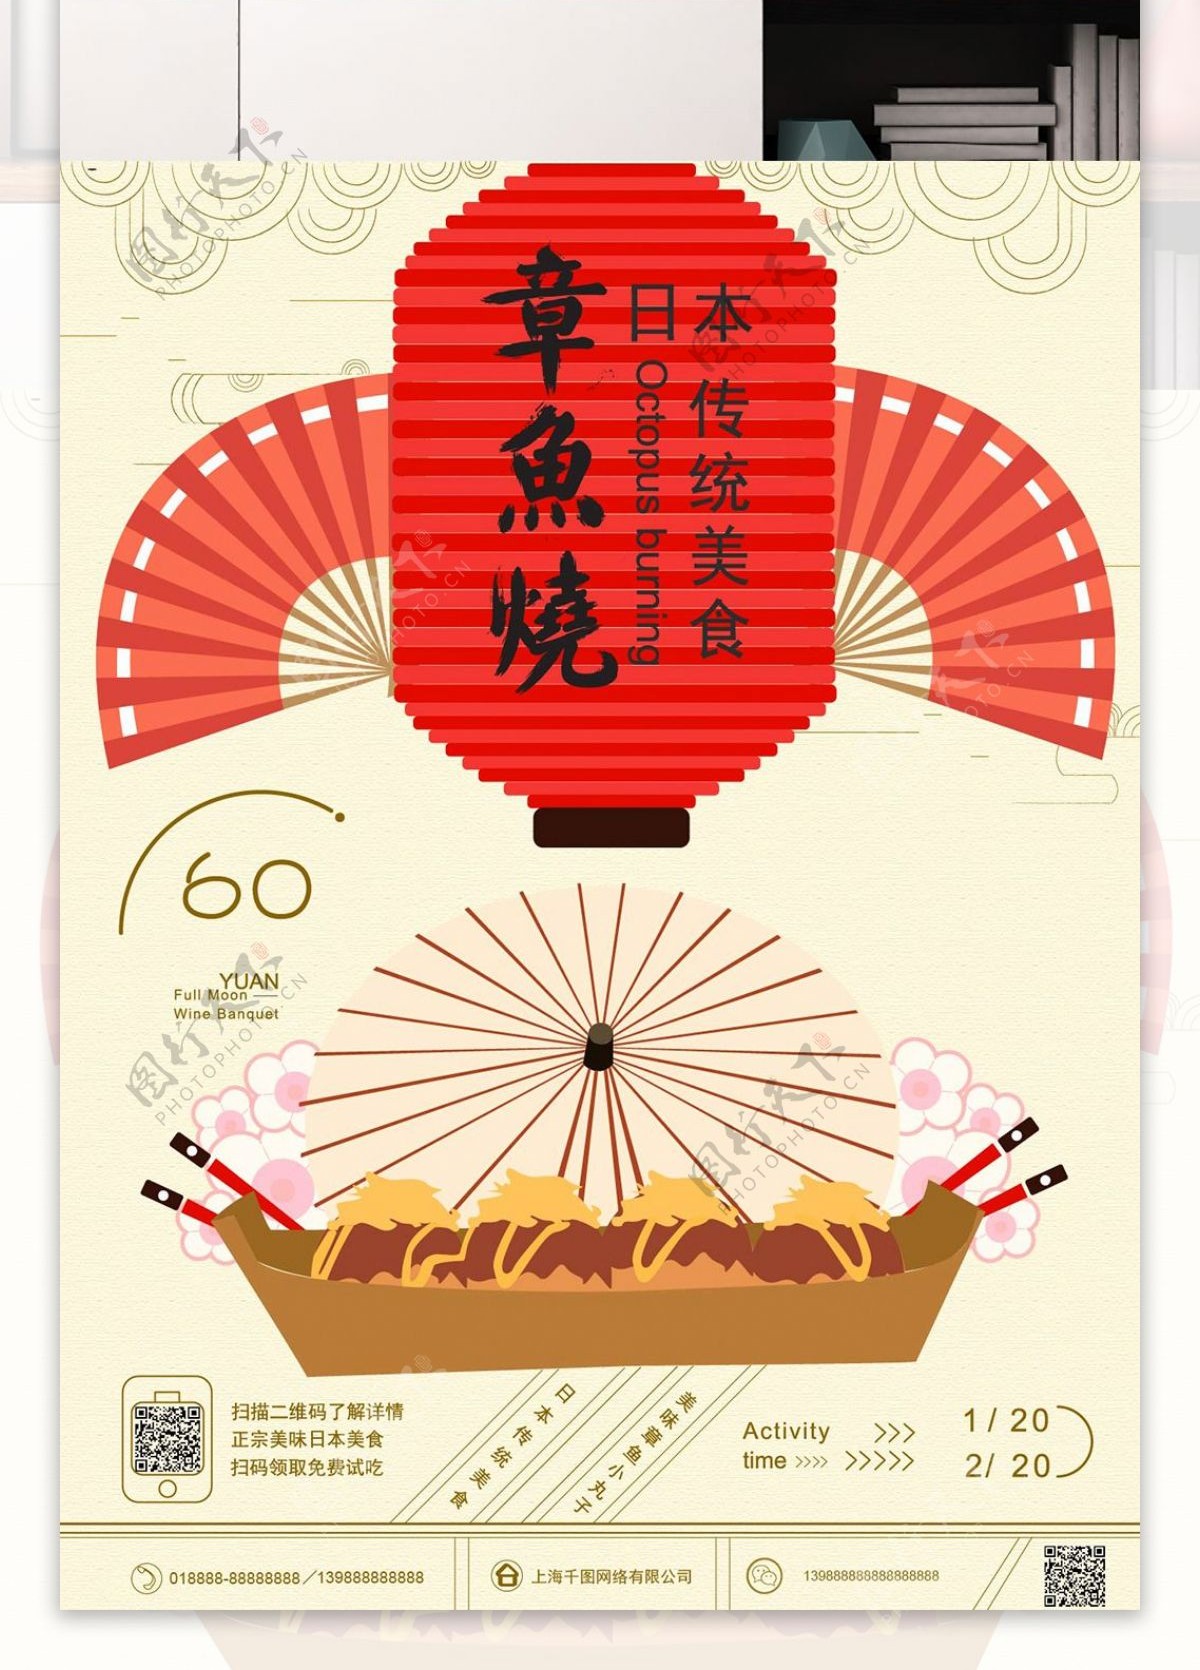 原创手绘日本元素美食海报